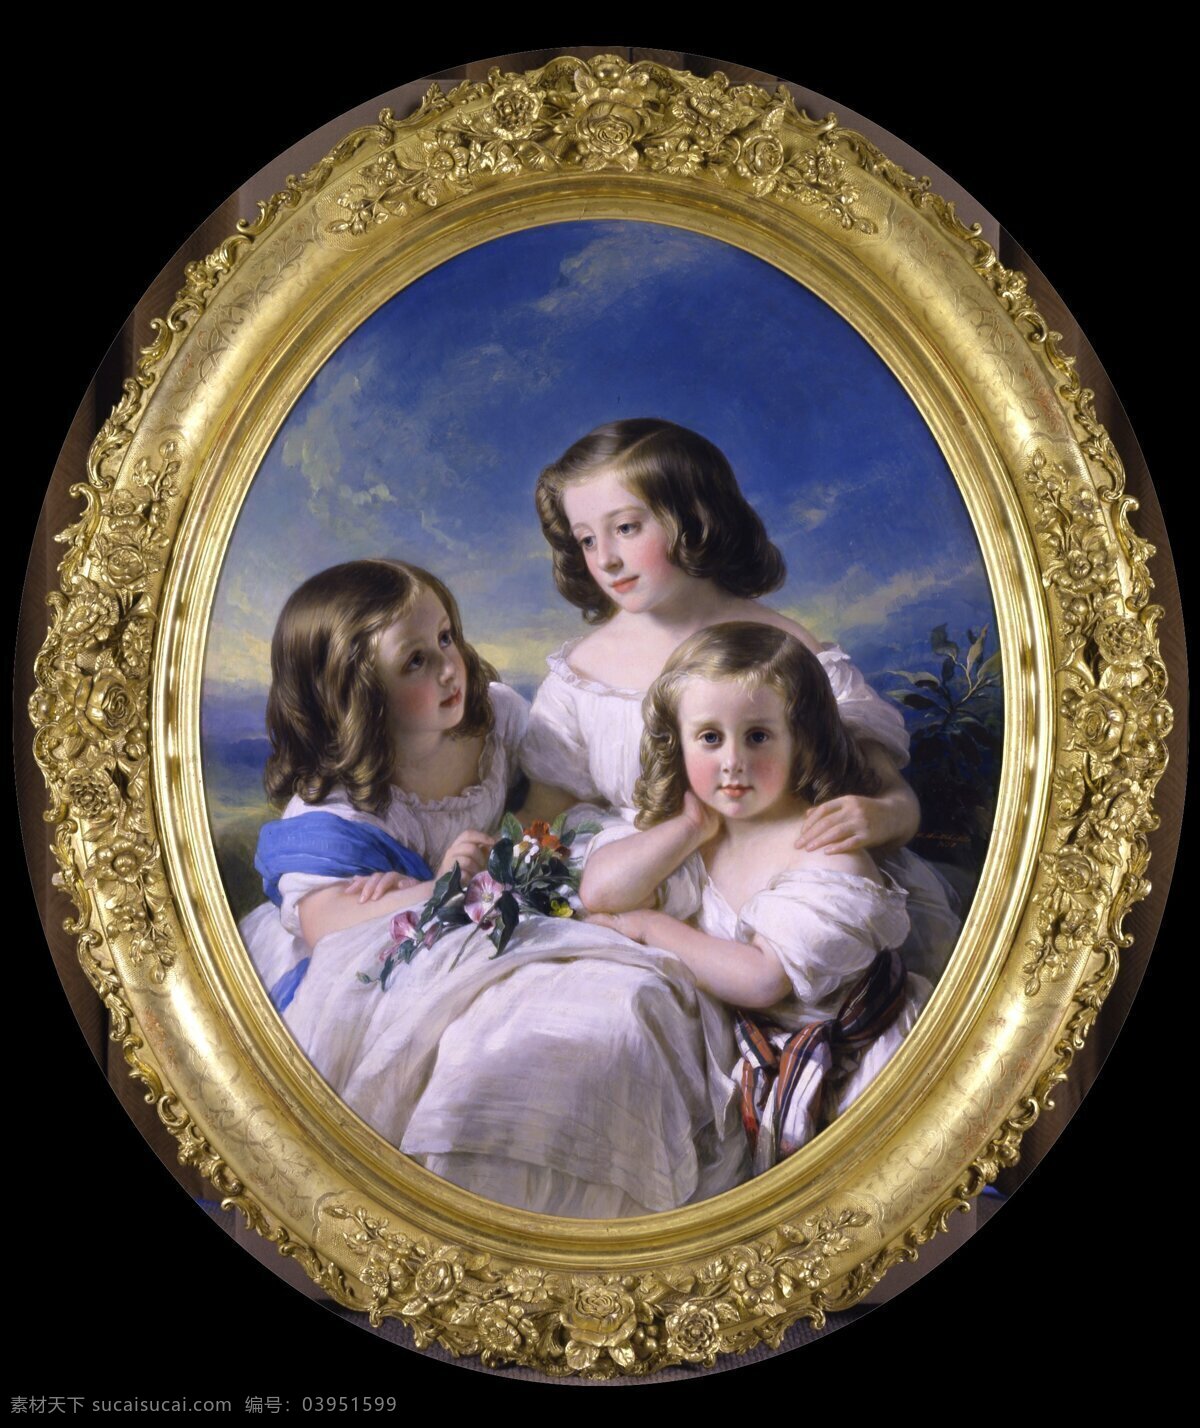 贵族三千金 赫尔曼 温特 哈尔特 作品 德国画家 弗朗茨的弟弟 三个小姐妹 天真烂漫 蓝天白云 享受 美好 童年 时光 19世纪油画 油画 绘画书法 文化艺术